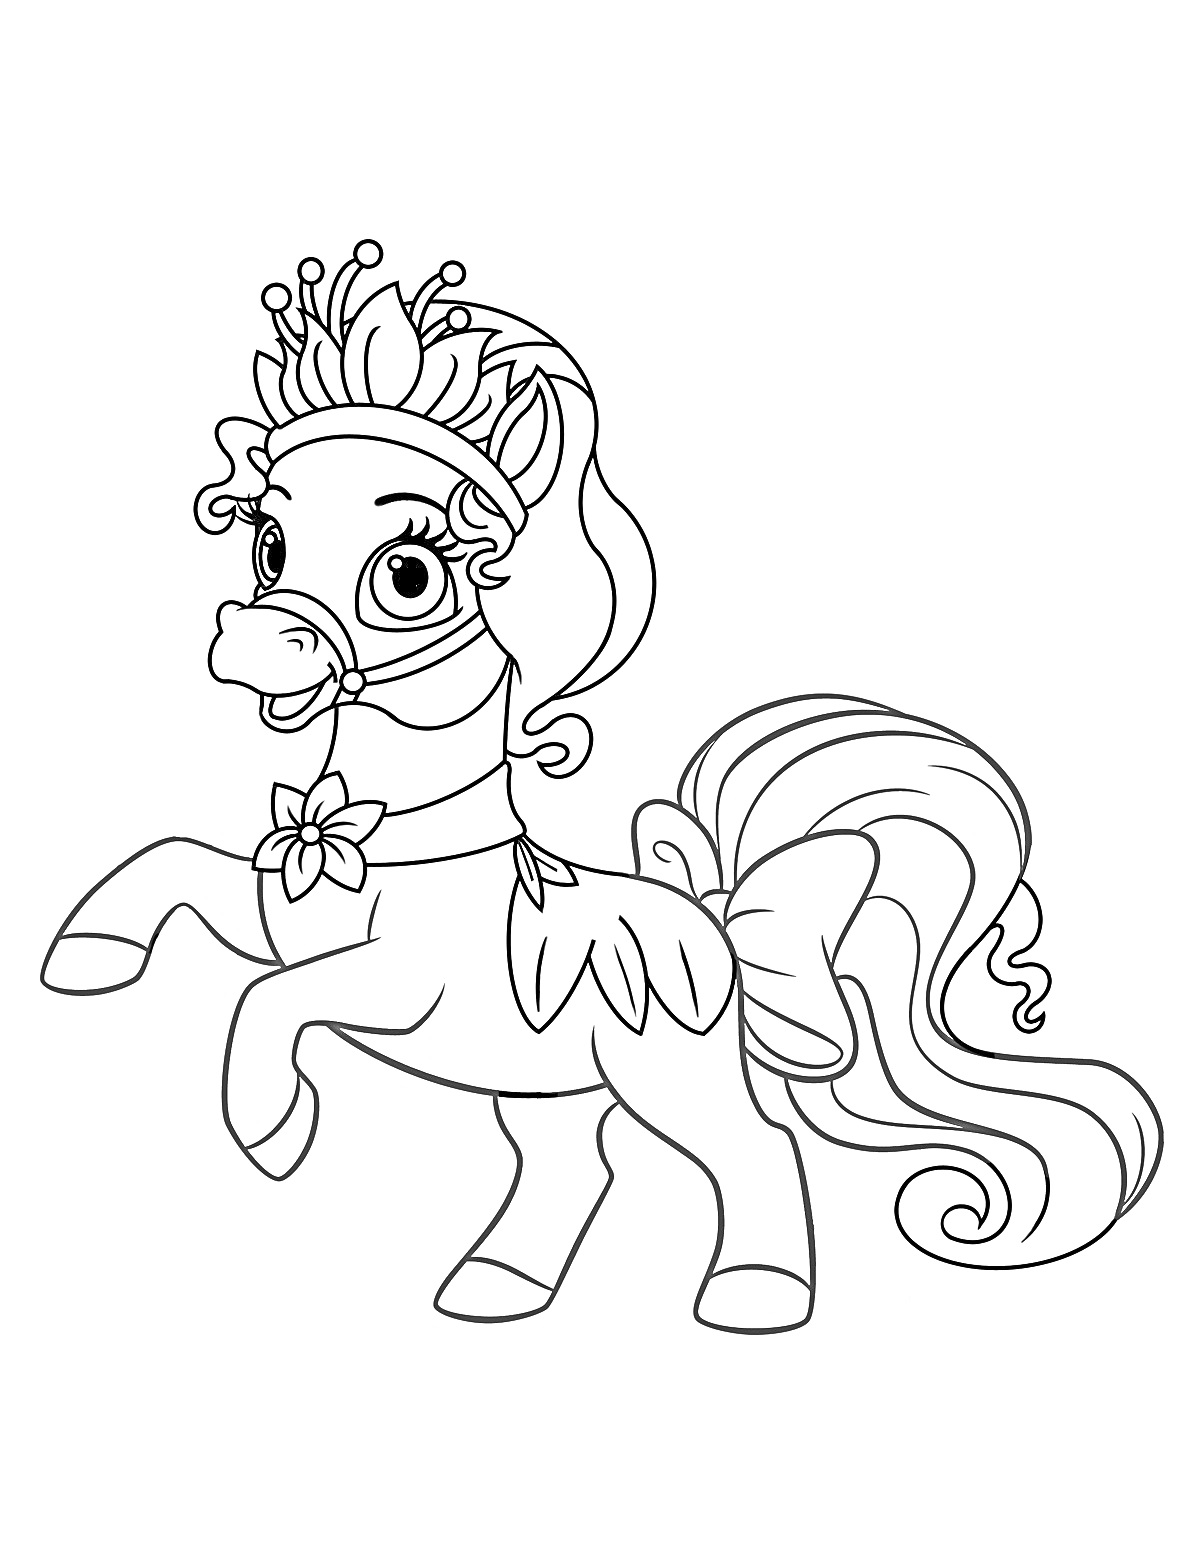 Королевский питомец пони с короной и бантом